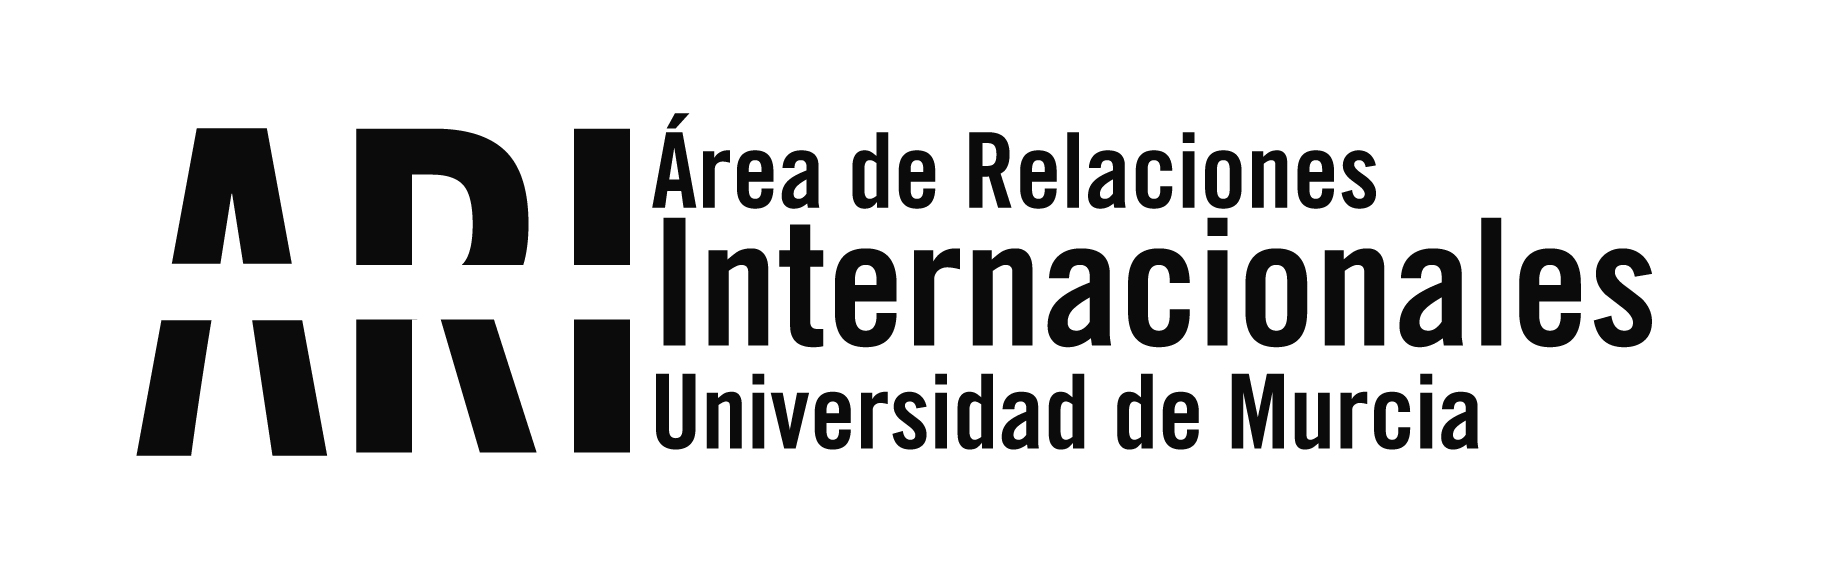 La Universidad de Murcia colaborará con las universidades del Caribe colombiano - Área de Relaciones Internacionales